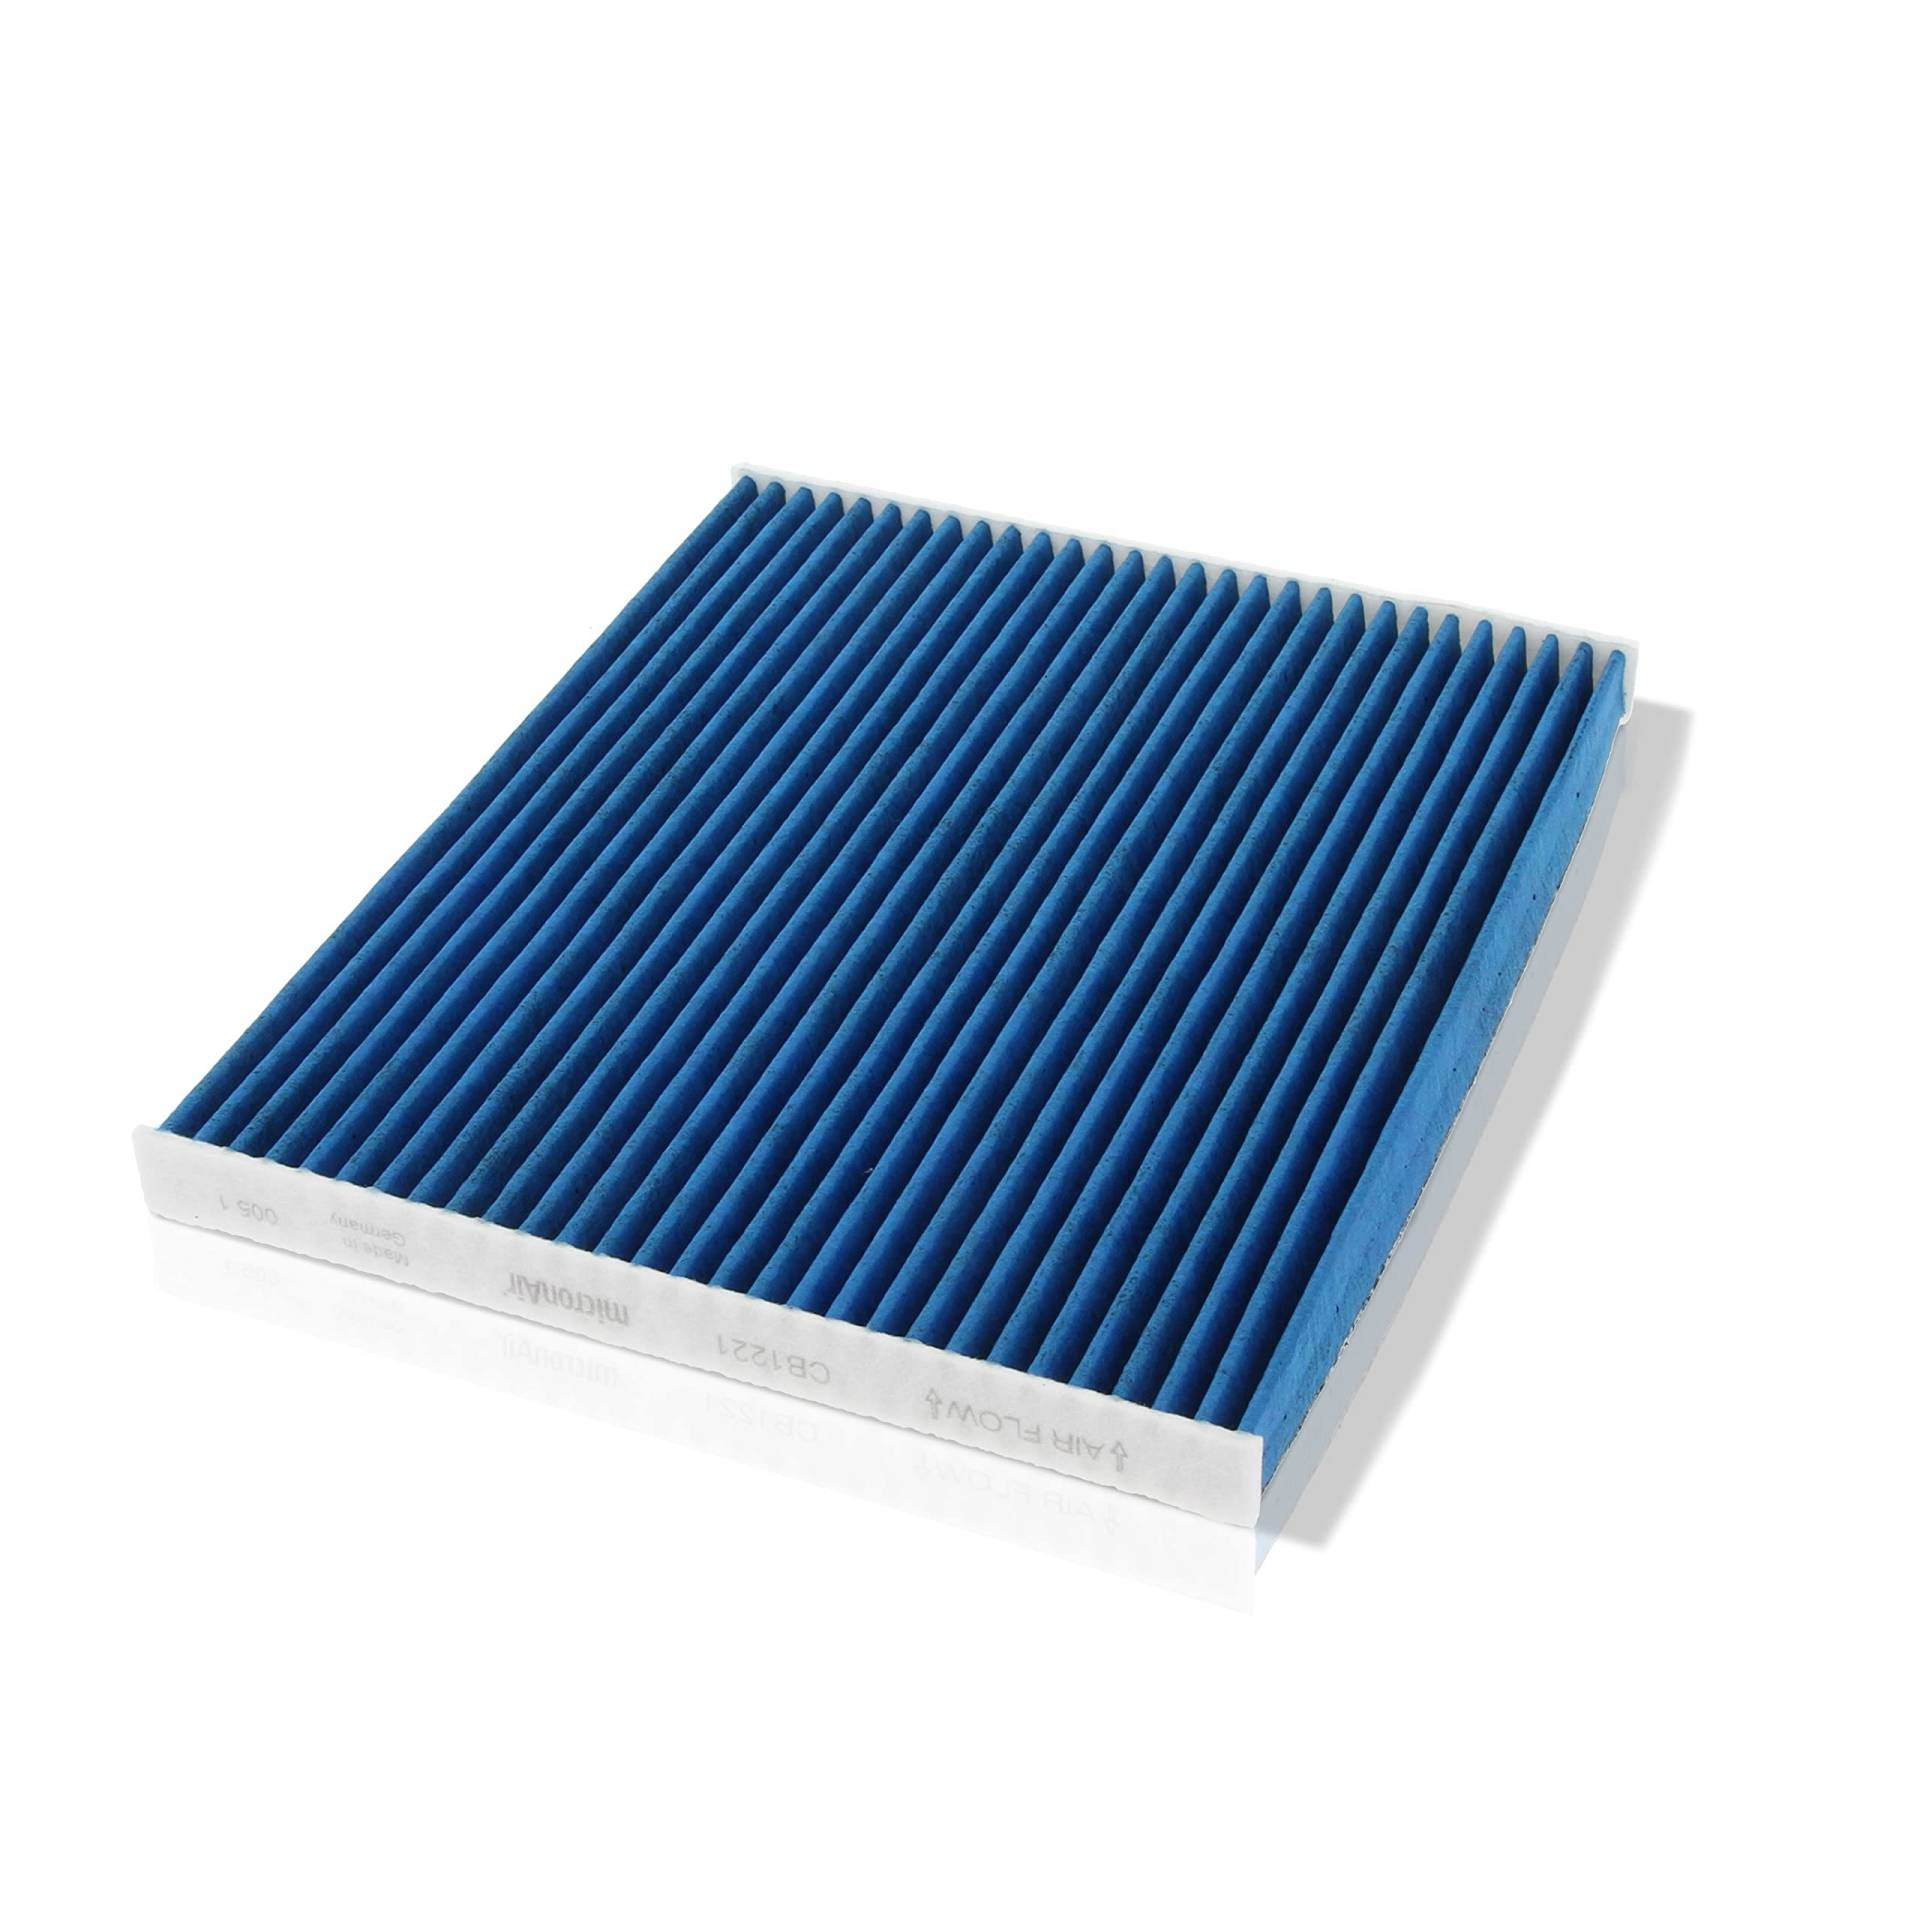 Corteco micronAir blue 49408482, Innenraumfilter fürs Auto mit 4 Filterschichten für hohe Luftqualität, effektiver Schutz vor viralen Aerosolen, Pollen & Allergenen, Feinstaub & Gasen – für PKW von Corteco